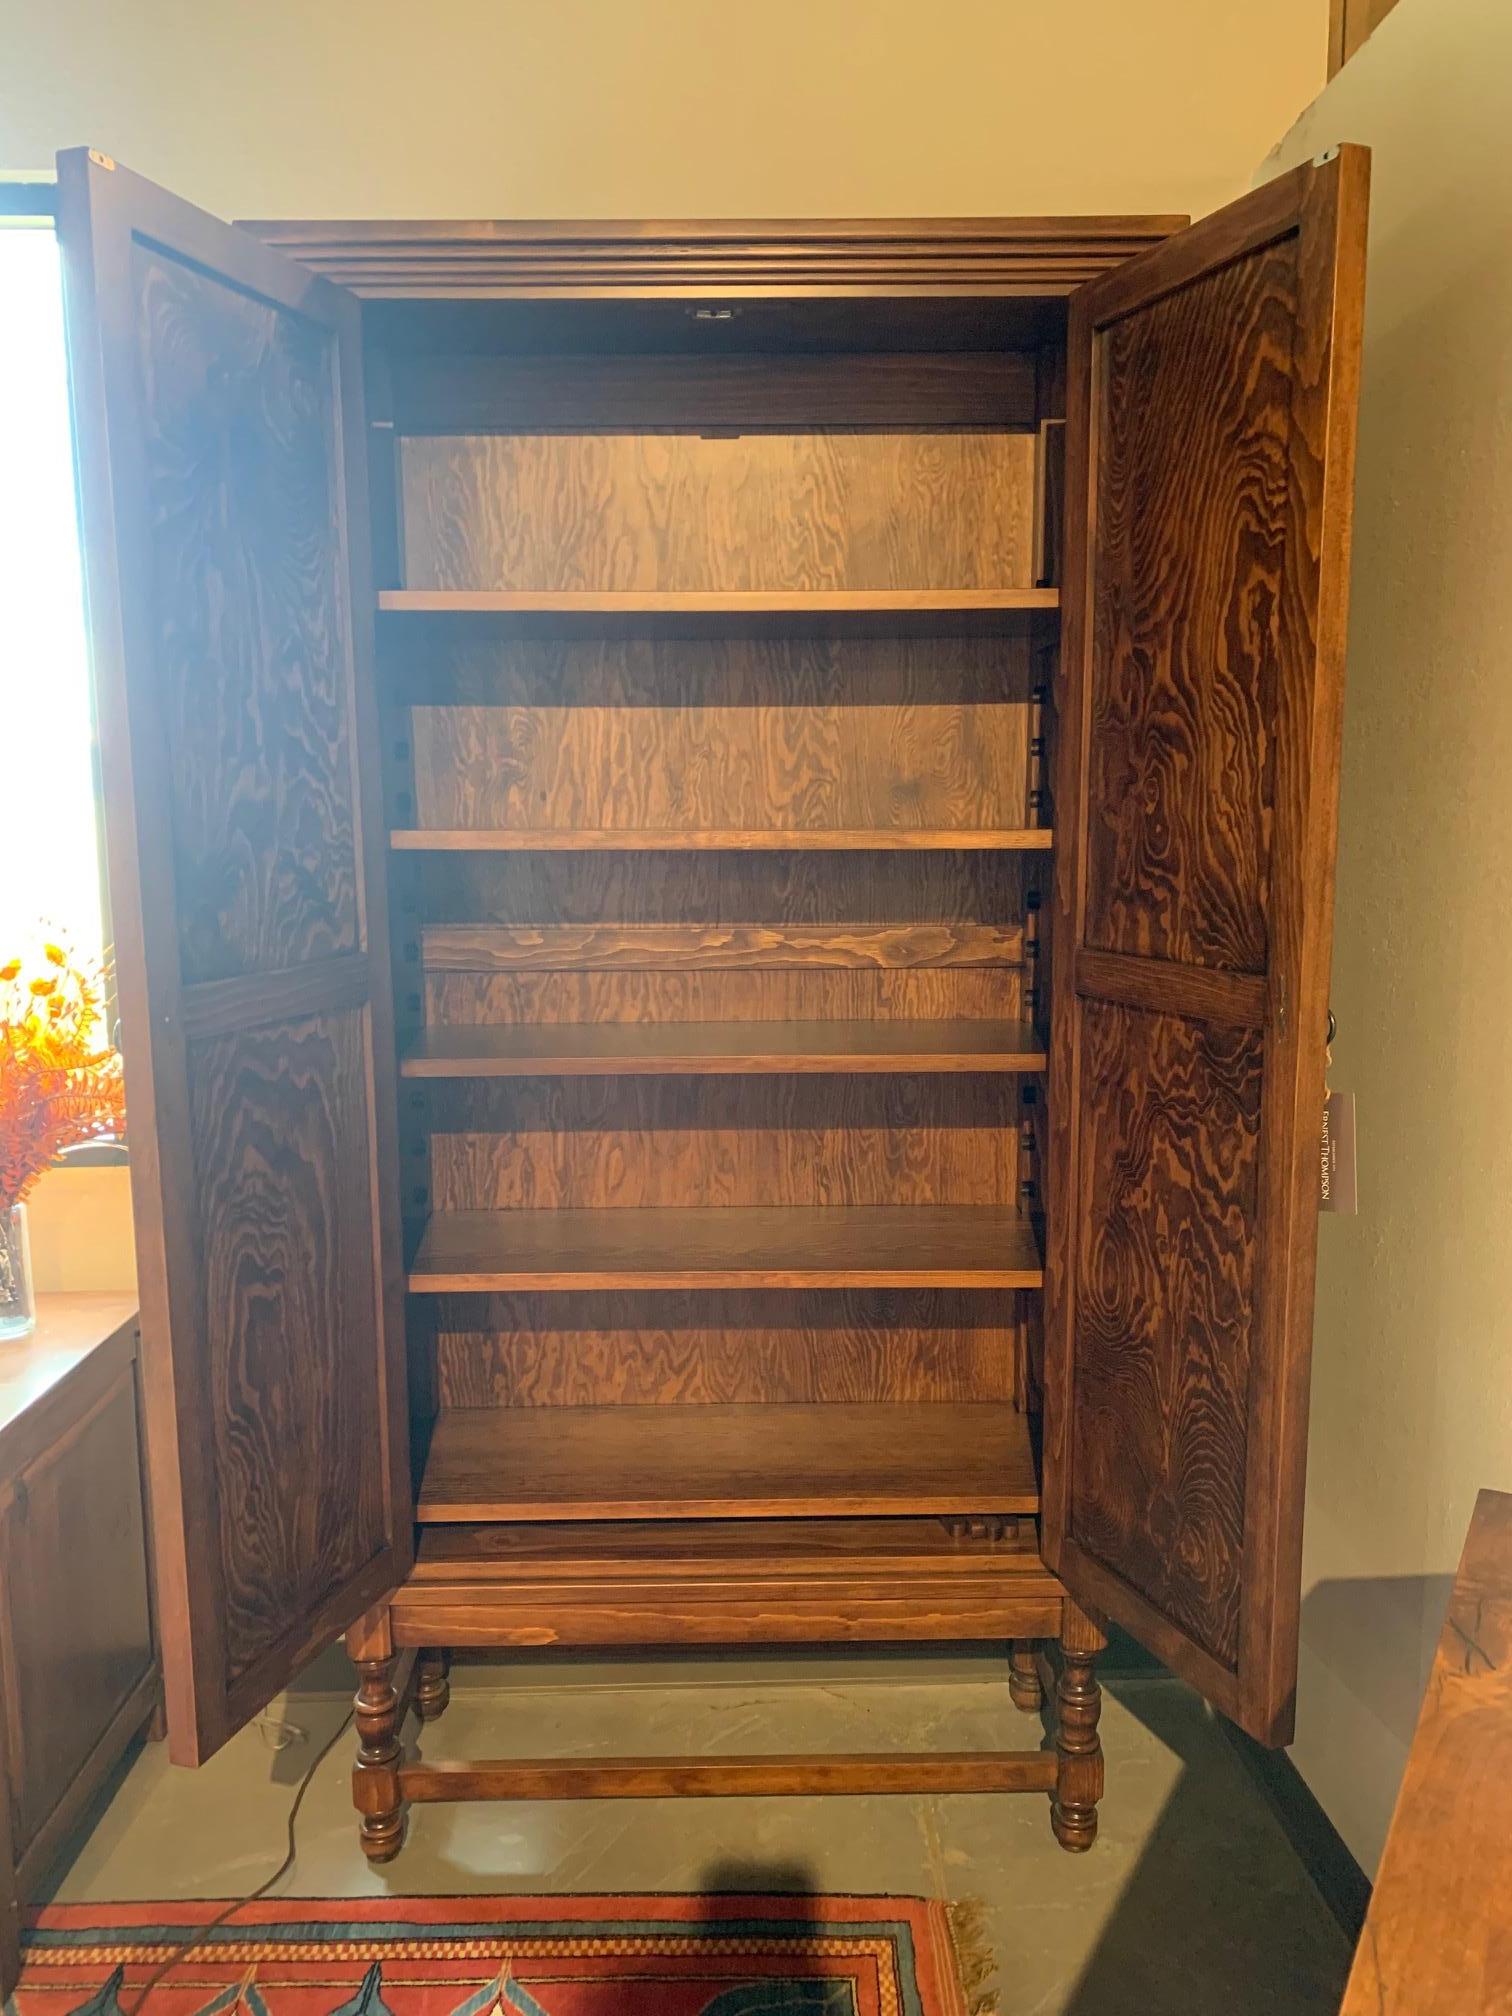 Cette armoire à treillis impériale unique en son genre est fabriquée à la main en pin avec une superbe finition Séville.

-Profondeur intérieure de l'étagère : 14